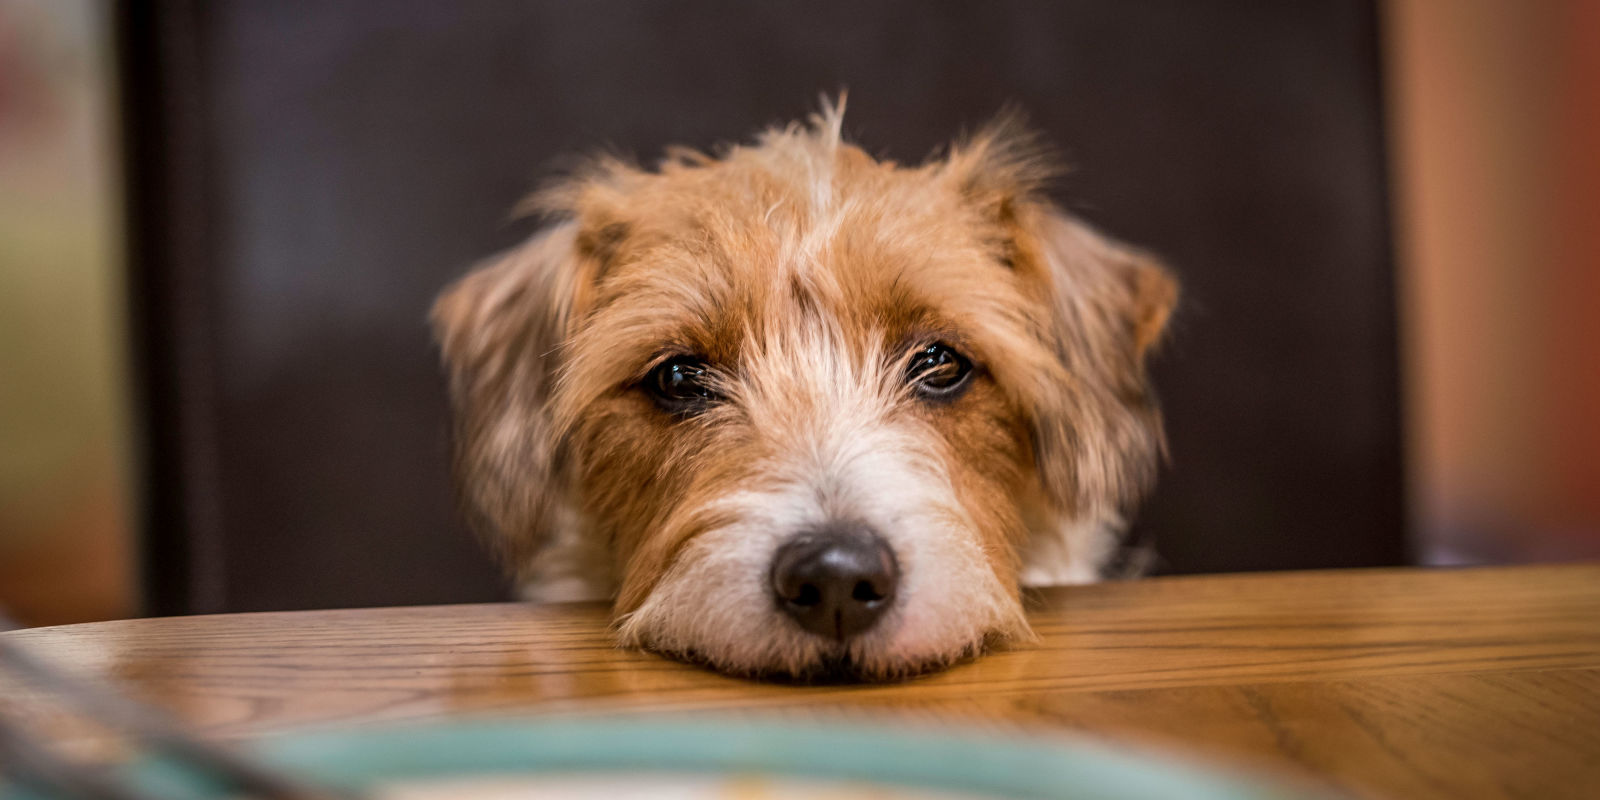 Pedir comida é um comportamento comum entre os cães, muitas vezes reforçado pelo próprio dono. Saiba como reverter isso!